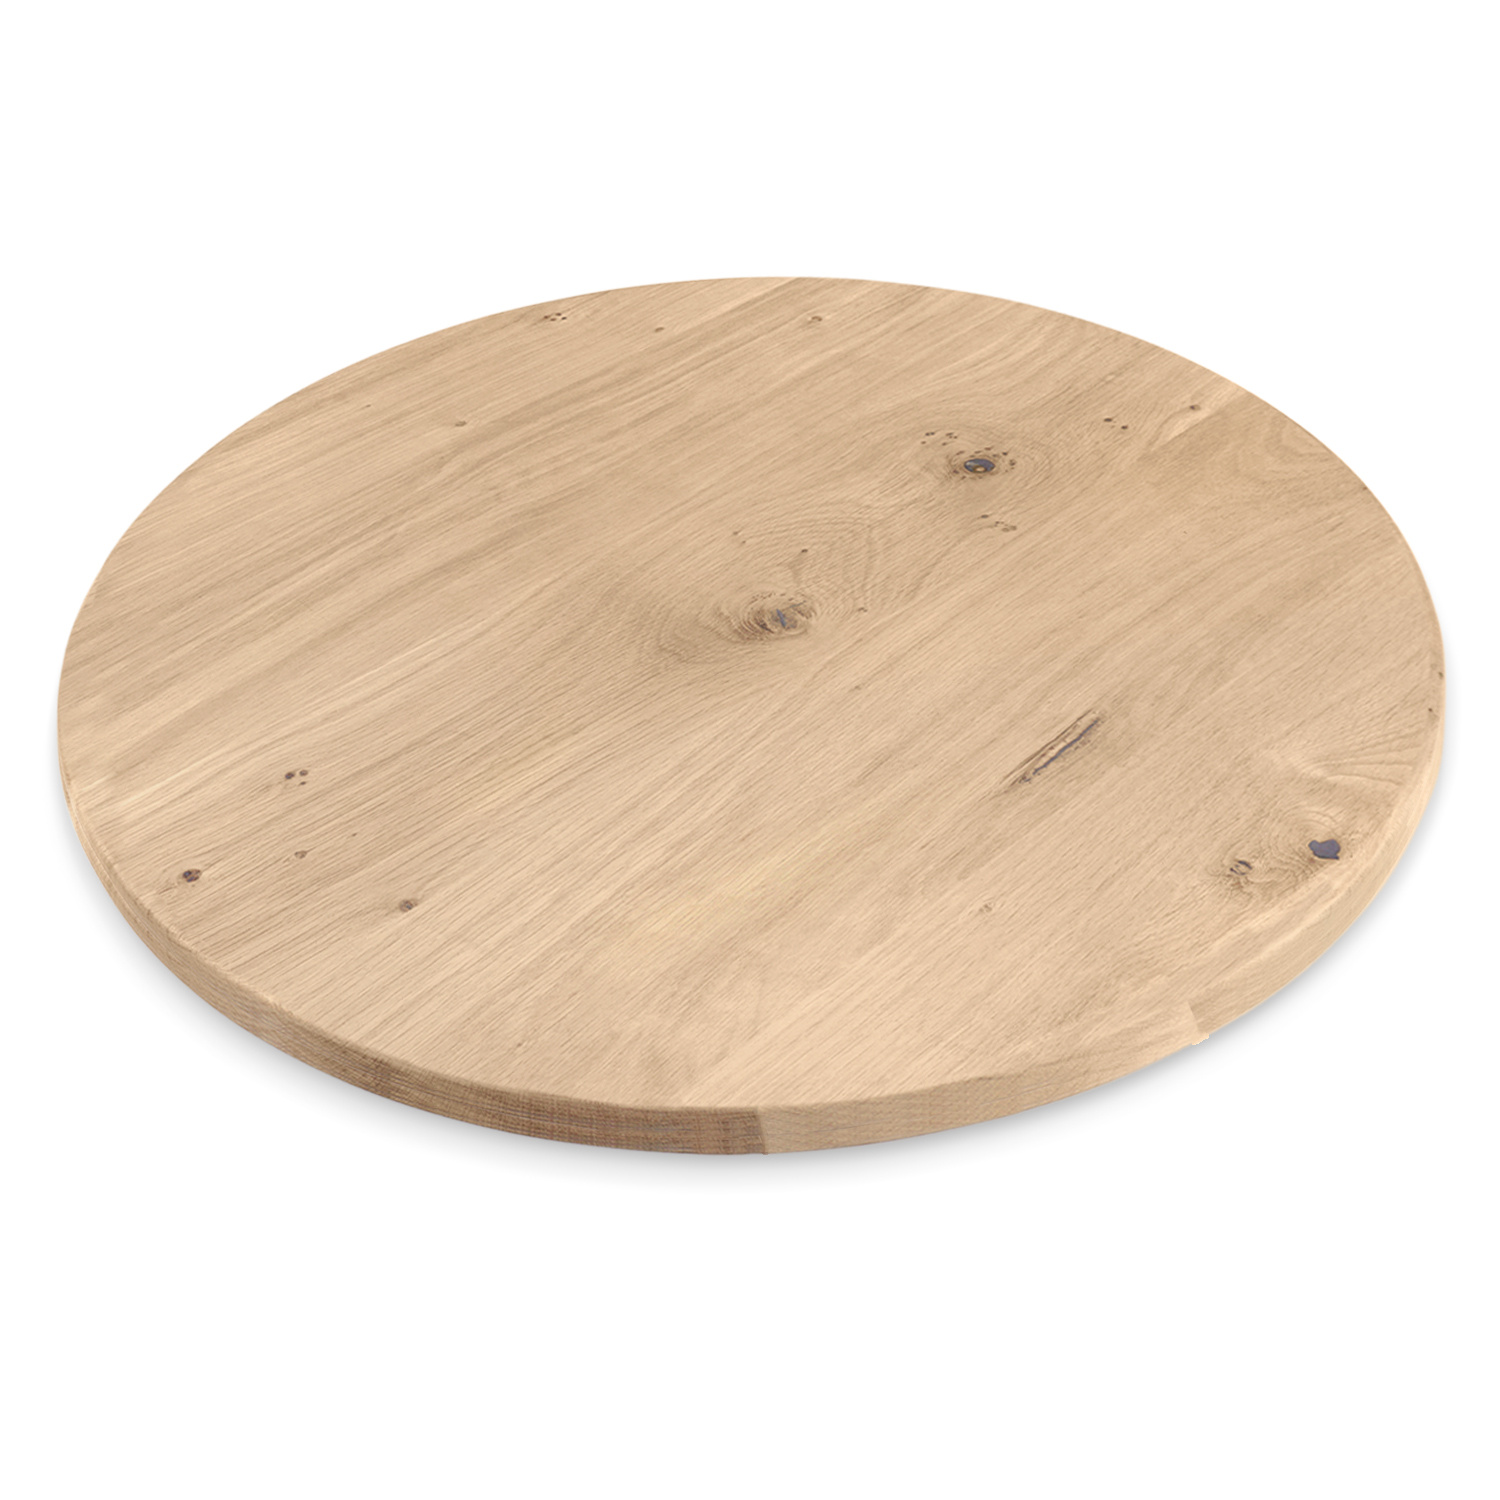  Eiken tafelblad rond - 4 cm dik (1-laag) - Diverse afmetingen - optioneel geborsteld - extra rustiek Europees eikenhout - met extra brede lamellen (circa 14-20 cm) - verlijmd kd 10-12%